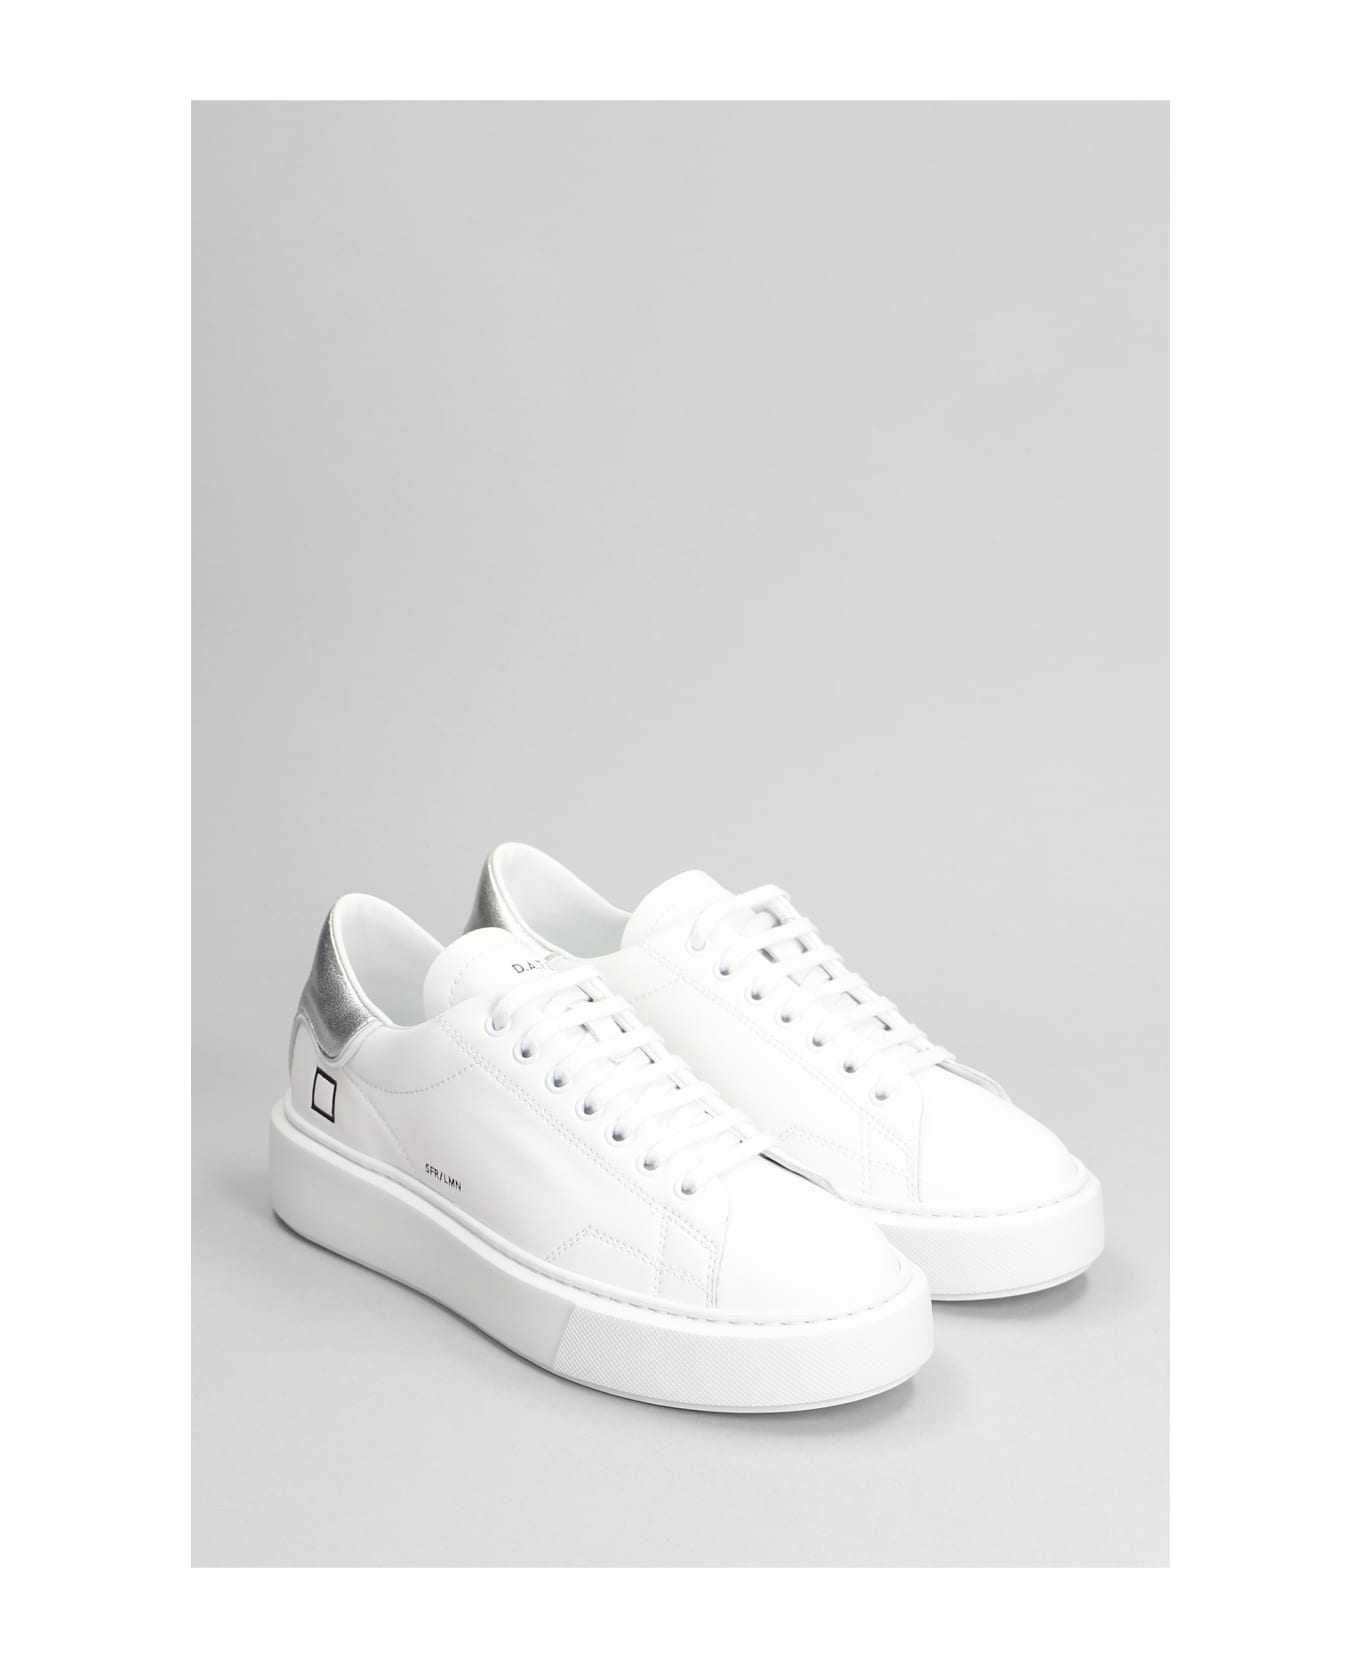 D.A.T.E. Sfera Sneakers In White Leather - white